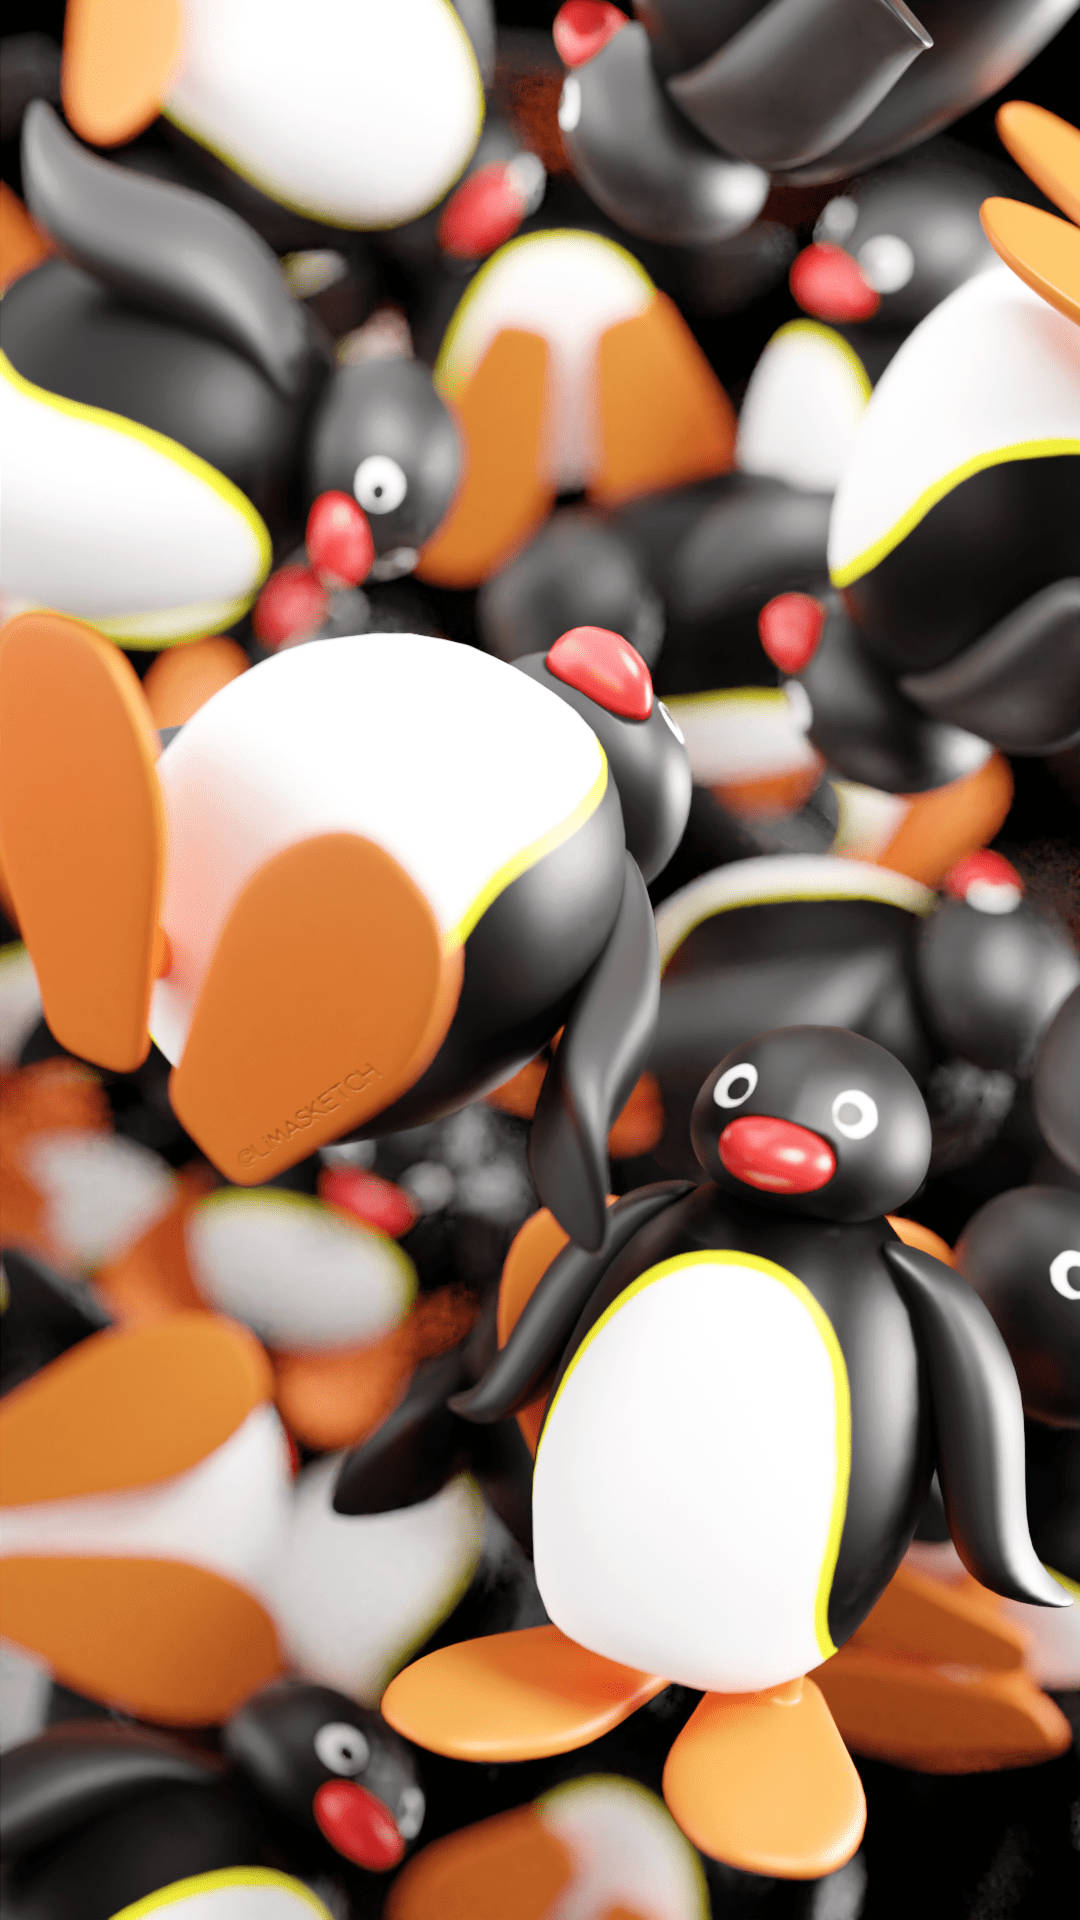 Pingu Toy Figures